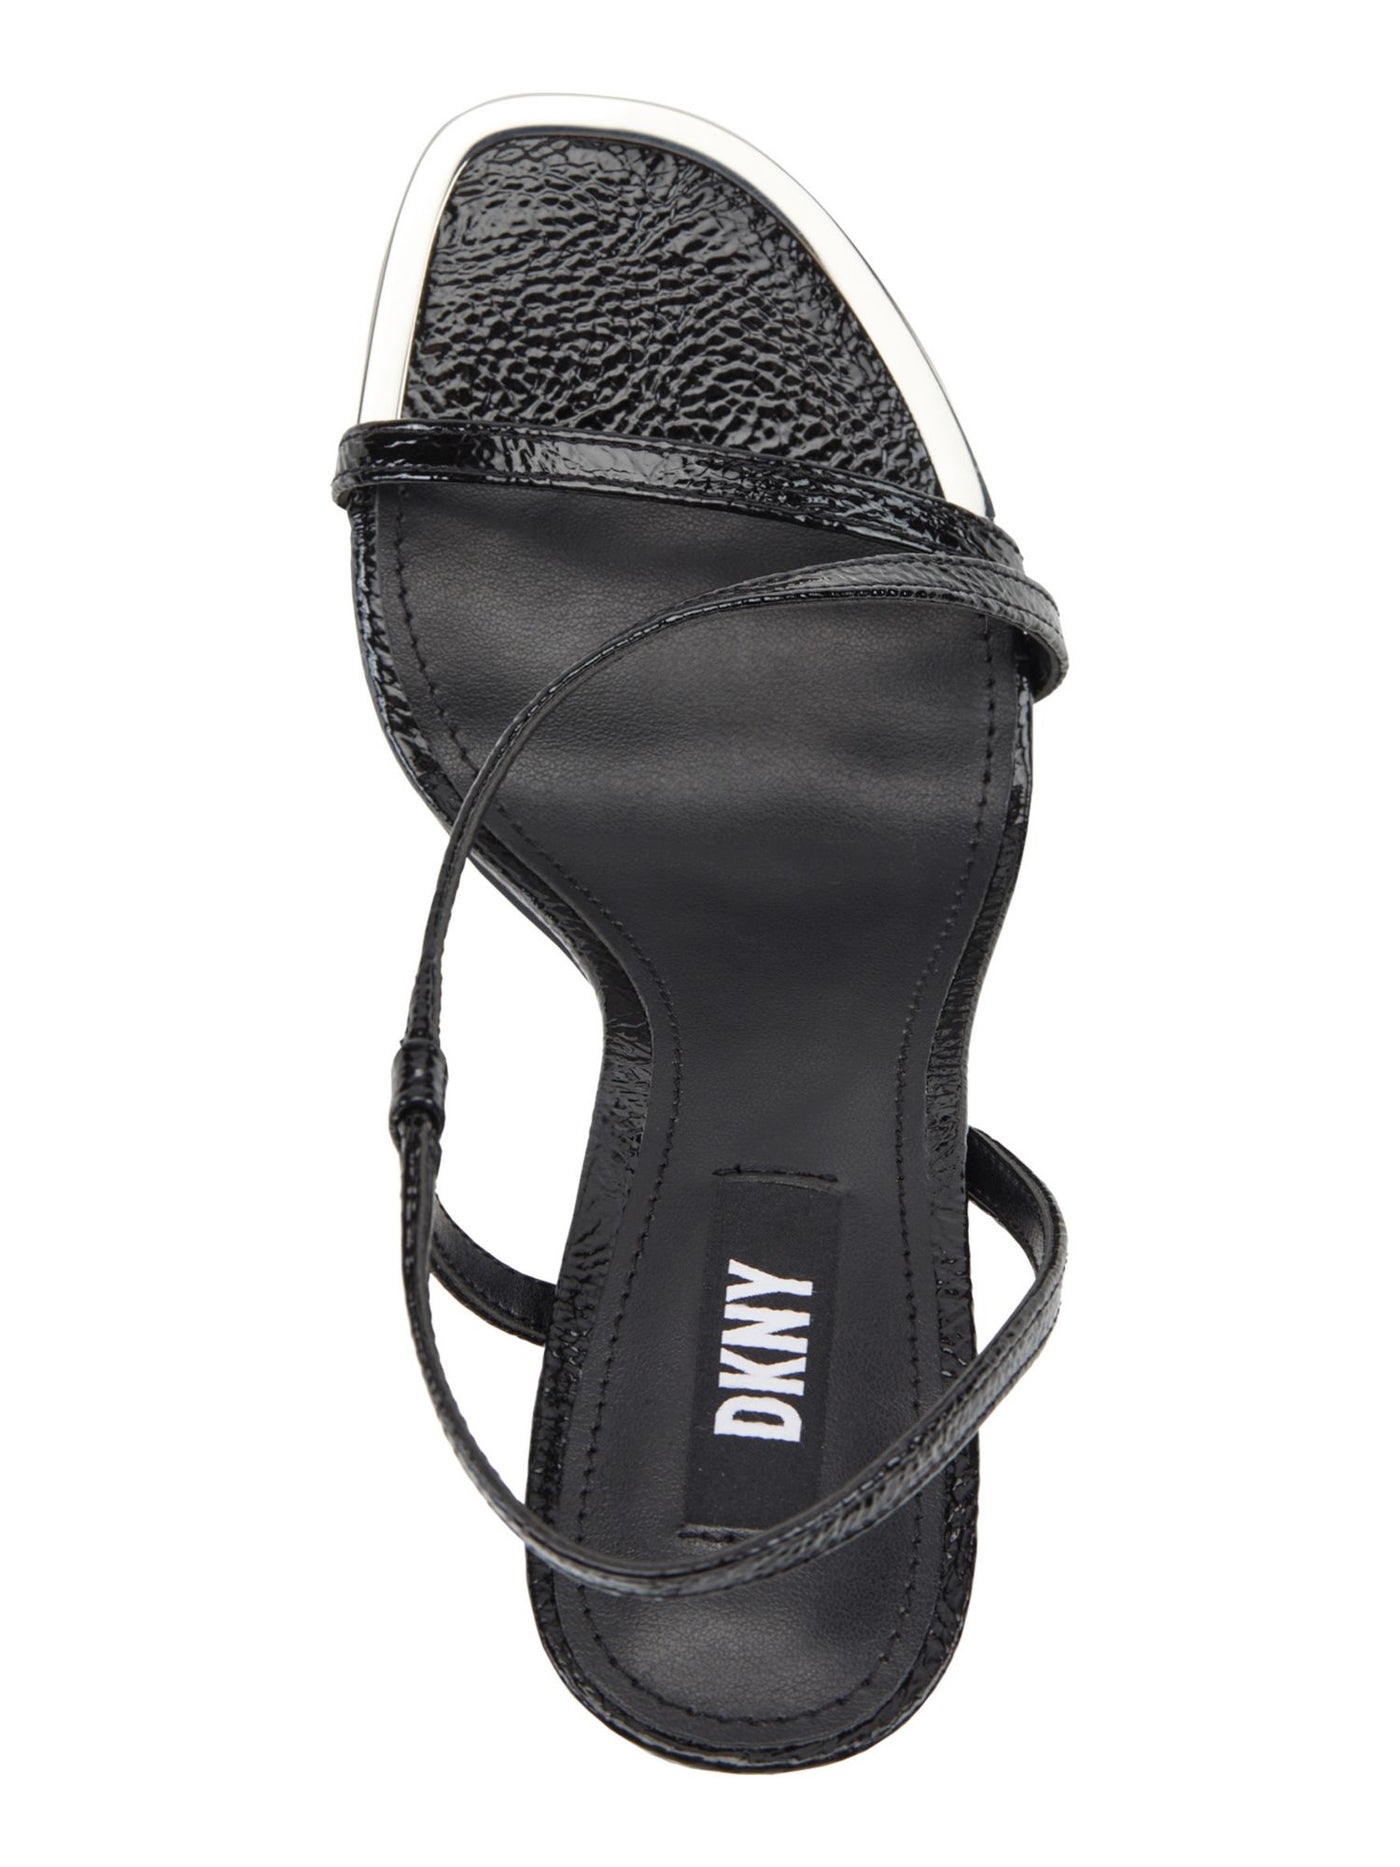 DKNY Womens Black Asymmetrical Danielle Round Toe Stiletto Slip On Dress Slingback Sandal 10